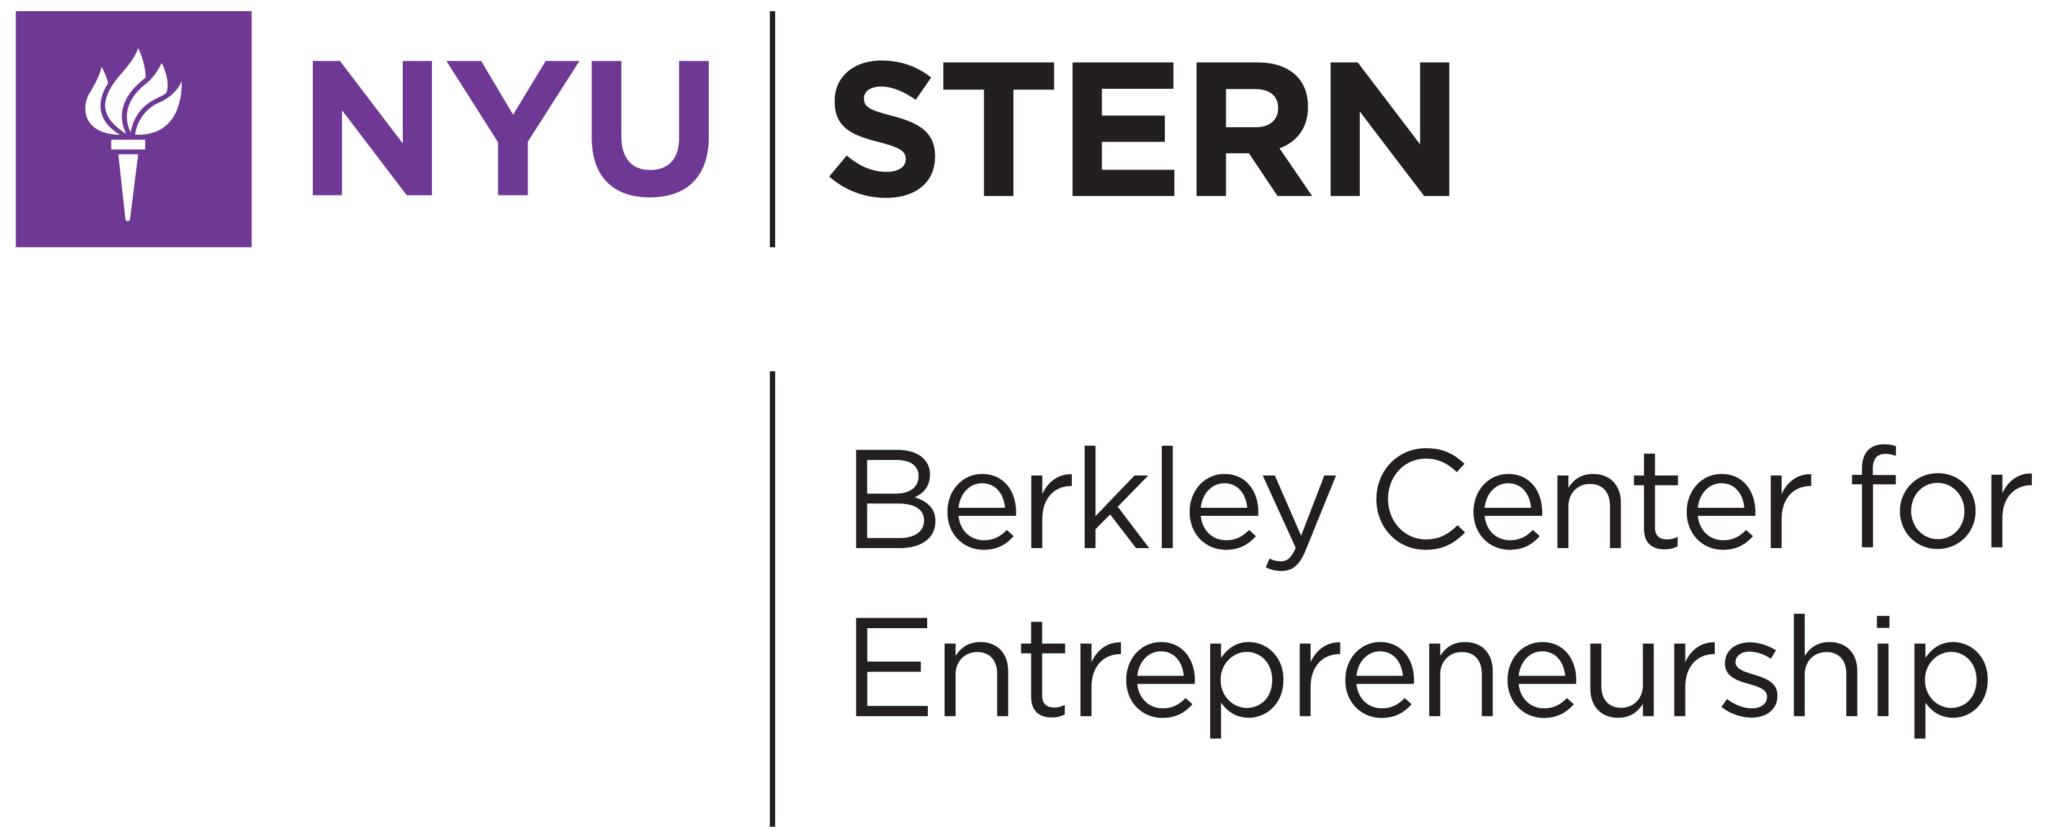 berkley center for entrepreneurship 1